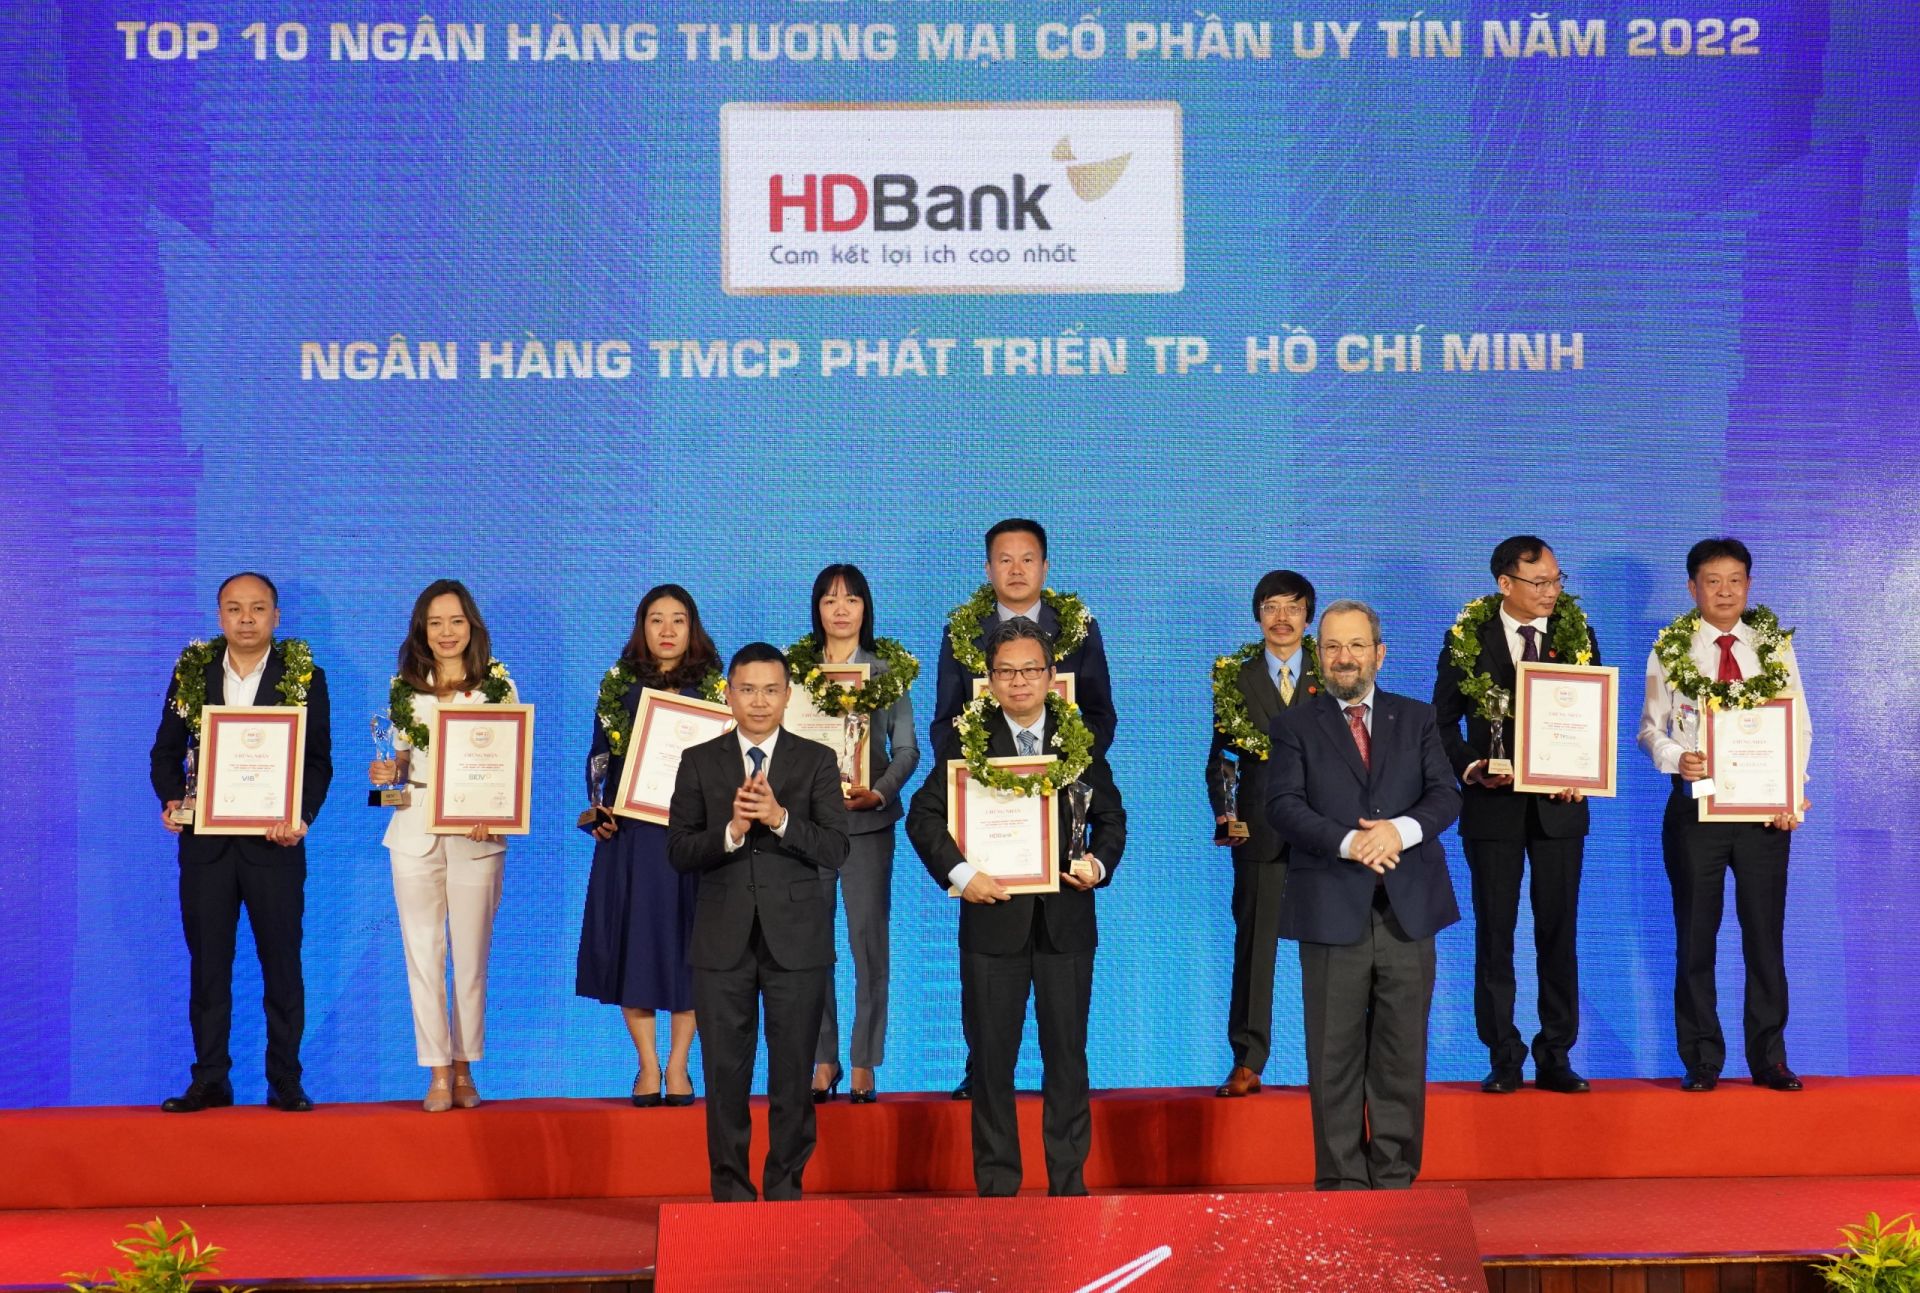 Ông Trần Hoài Phương – giám đốc Khối KHDN của HDBank (đứng giữa) đại diện Ngân hàng nhận giải Top Ngân hàng TMCP uy tín năm 2022